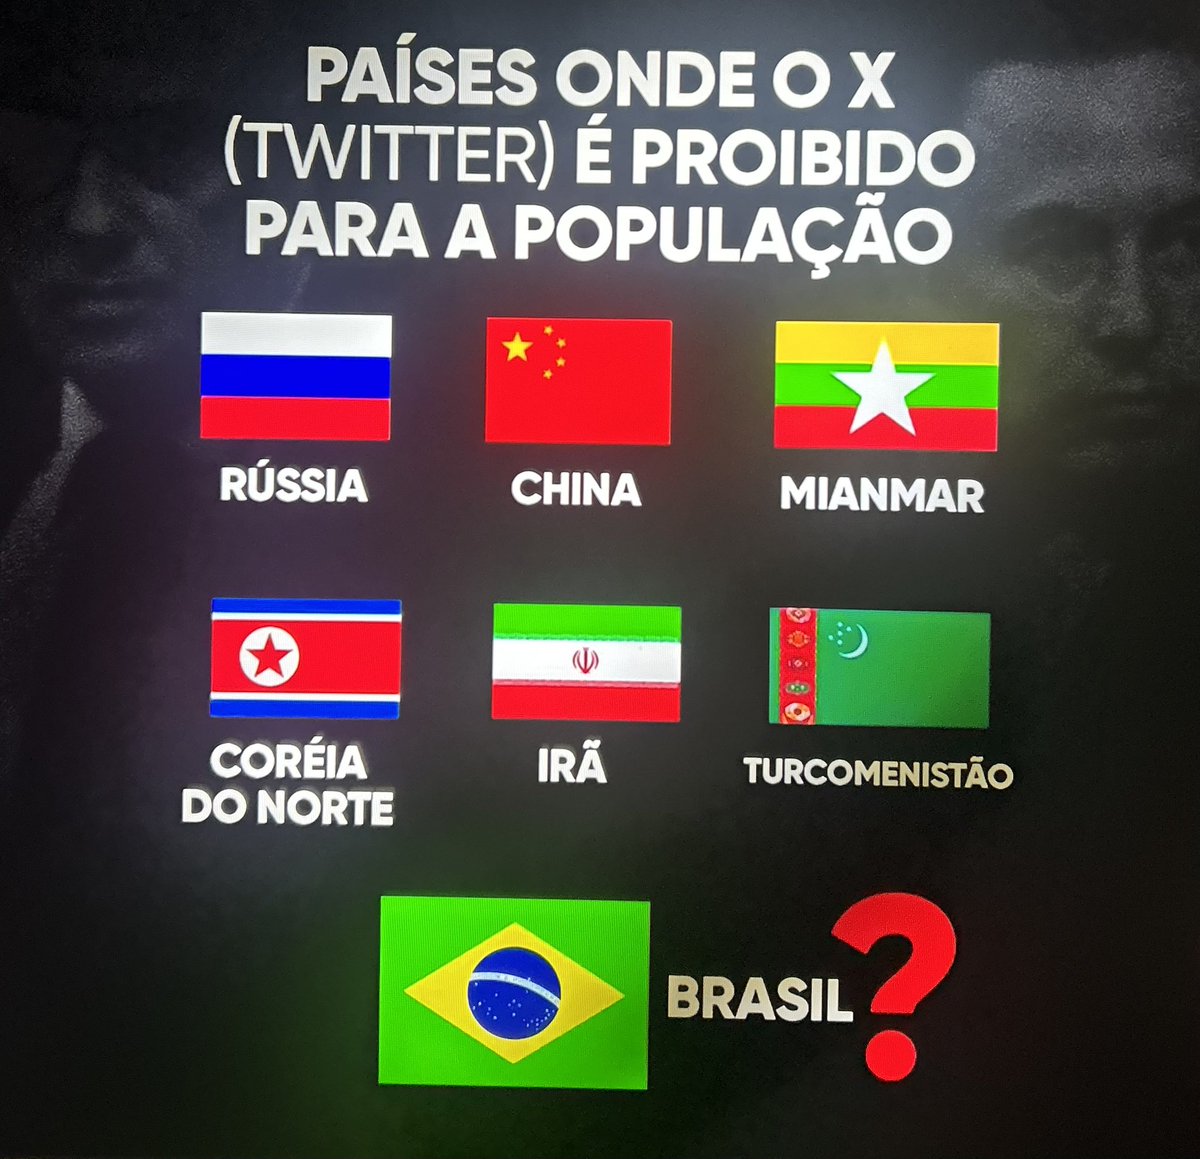 Esses são os países que não tem o app X (antigo Twitter) ou por banimento ou por sair de país ditatorial.
Oque está acontecendo no Brasil é surreal e tem pessoas que não perceberam ou fingem não perceber.

👇🏻